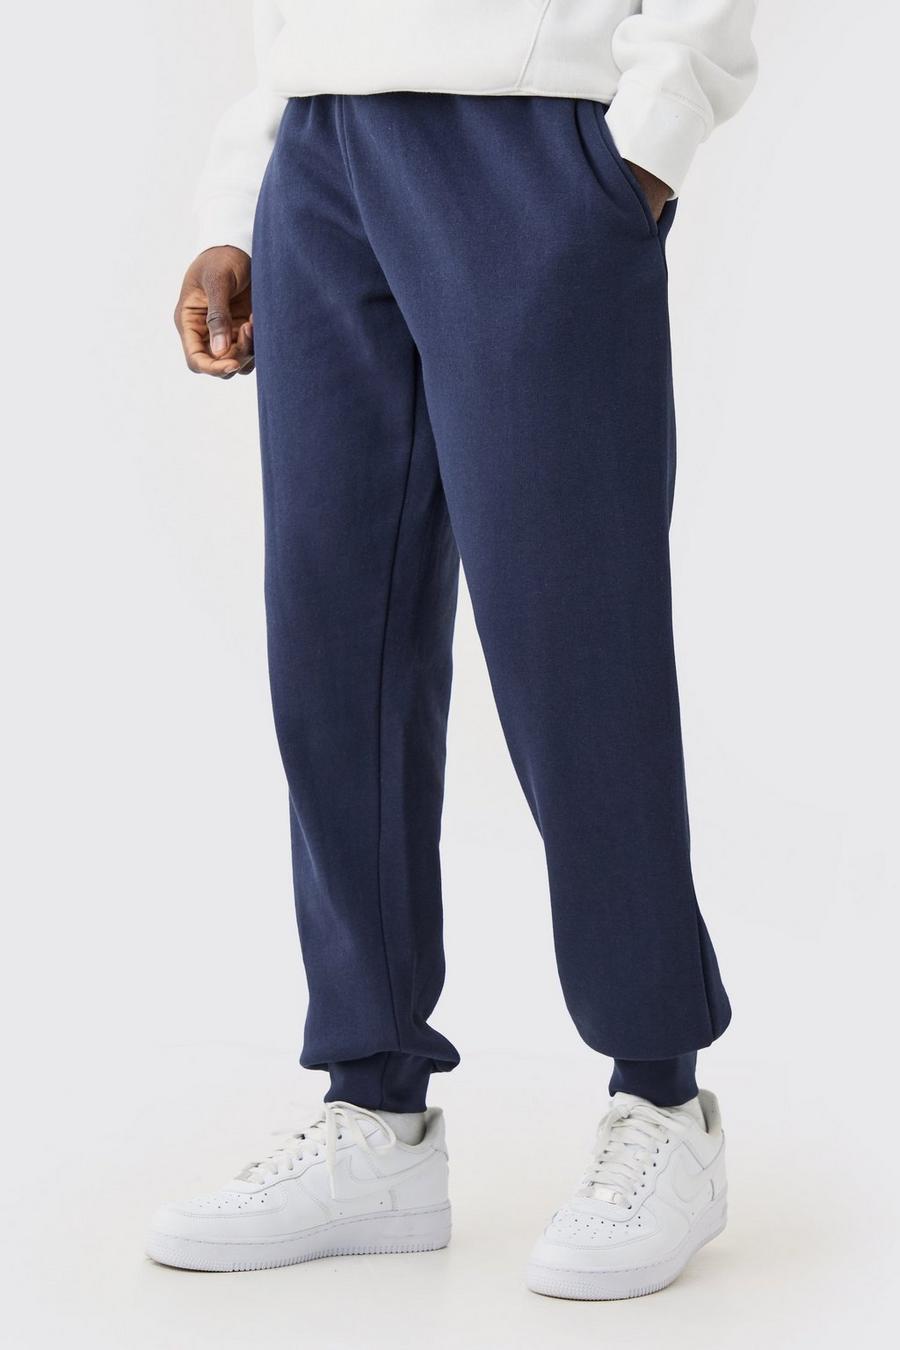 Pantalón deportivo Regular, Navy